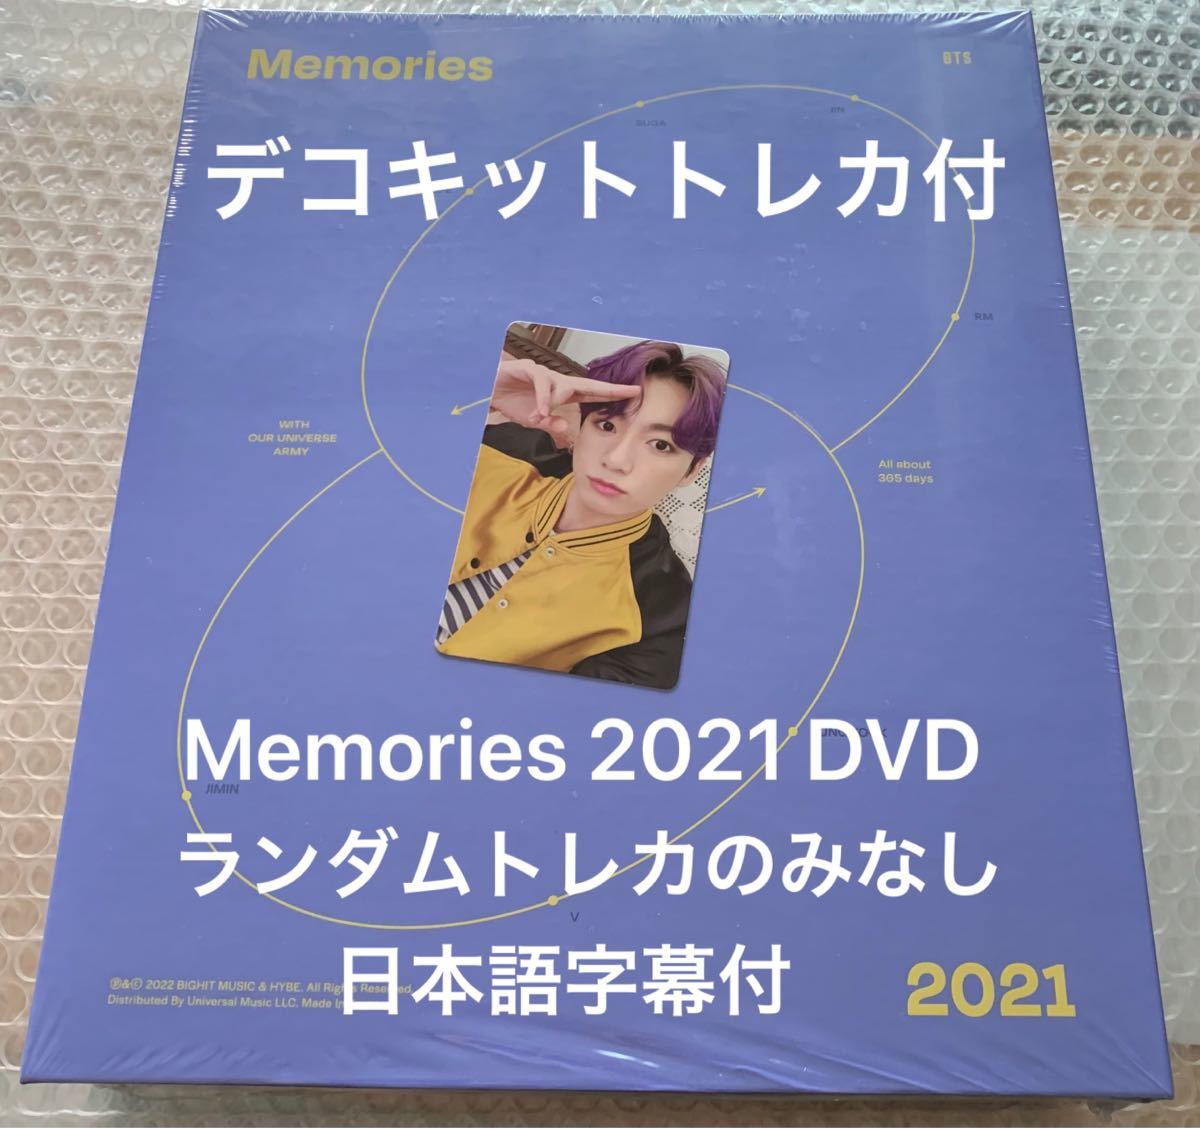 BTS Memories メモリーズ 2021 DVD 日本語字幕 デコキット トレカ